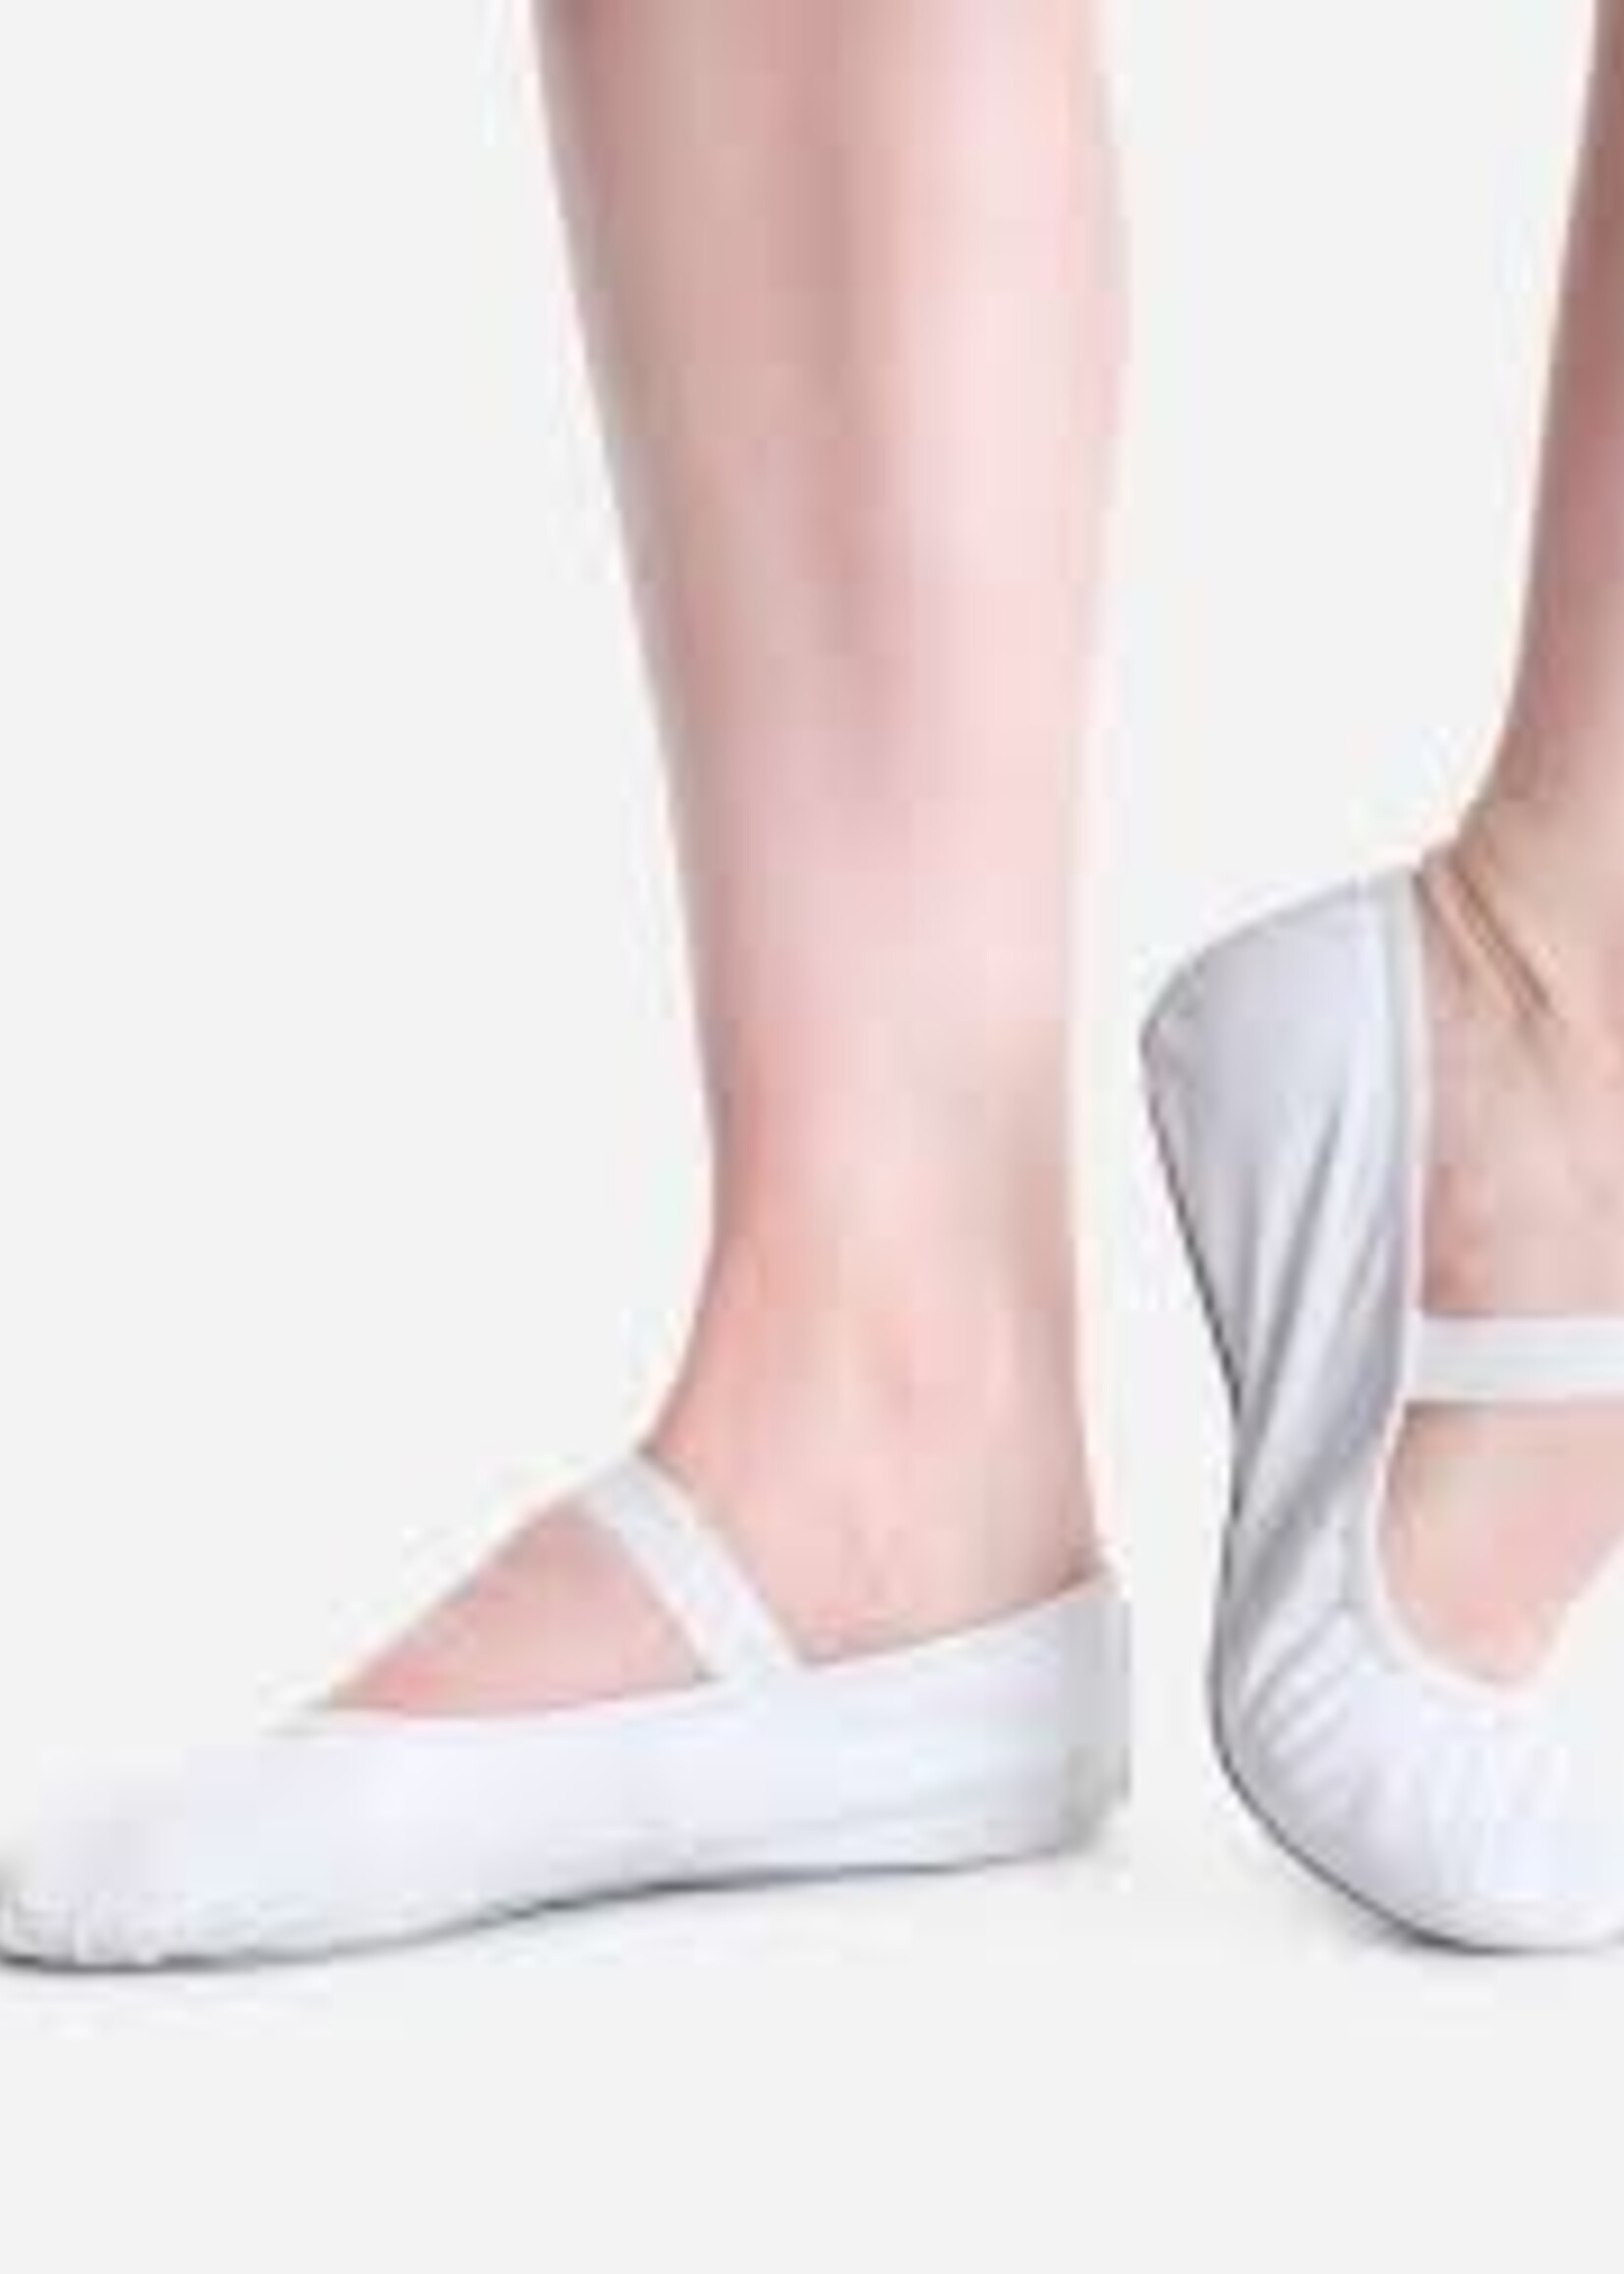 SoDanća SD69L Full Sole Leather w/out drawstring Ballet Shoe  WHITE